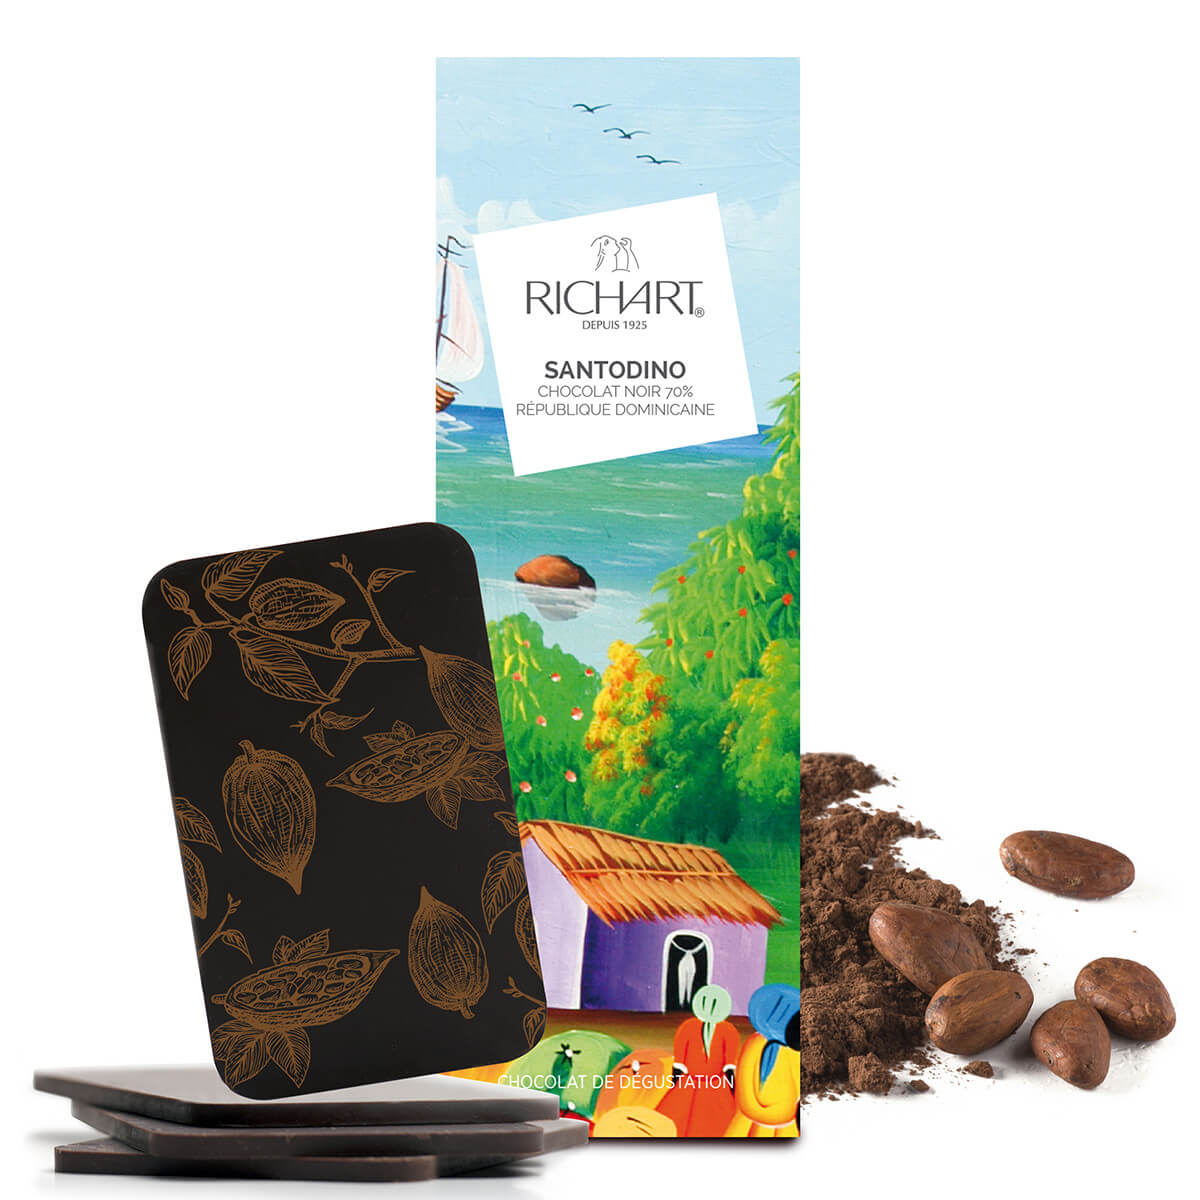 Tablette-écrin Santodino (chocolat noir 70% République Dominicaine)